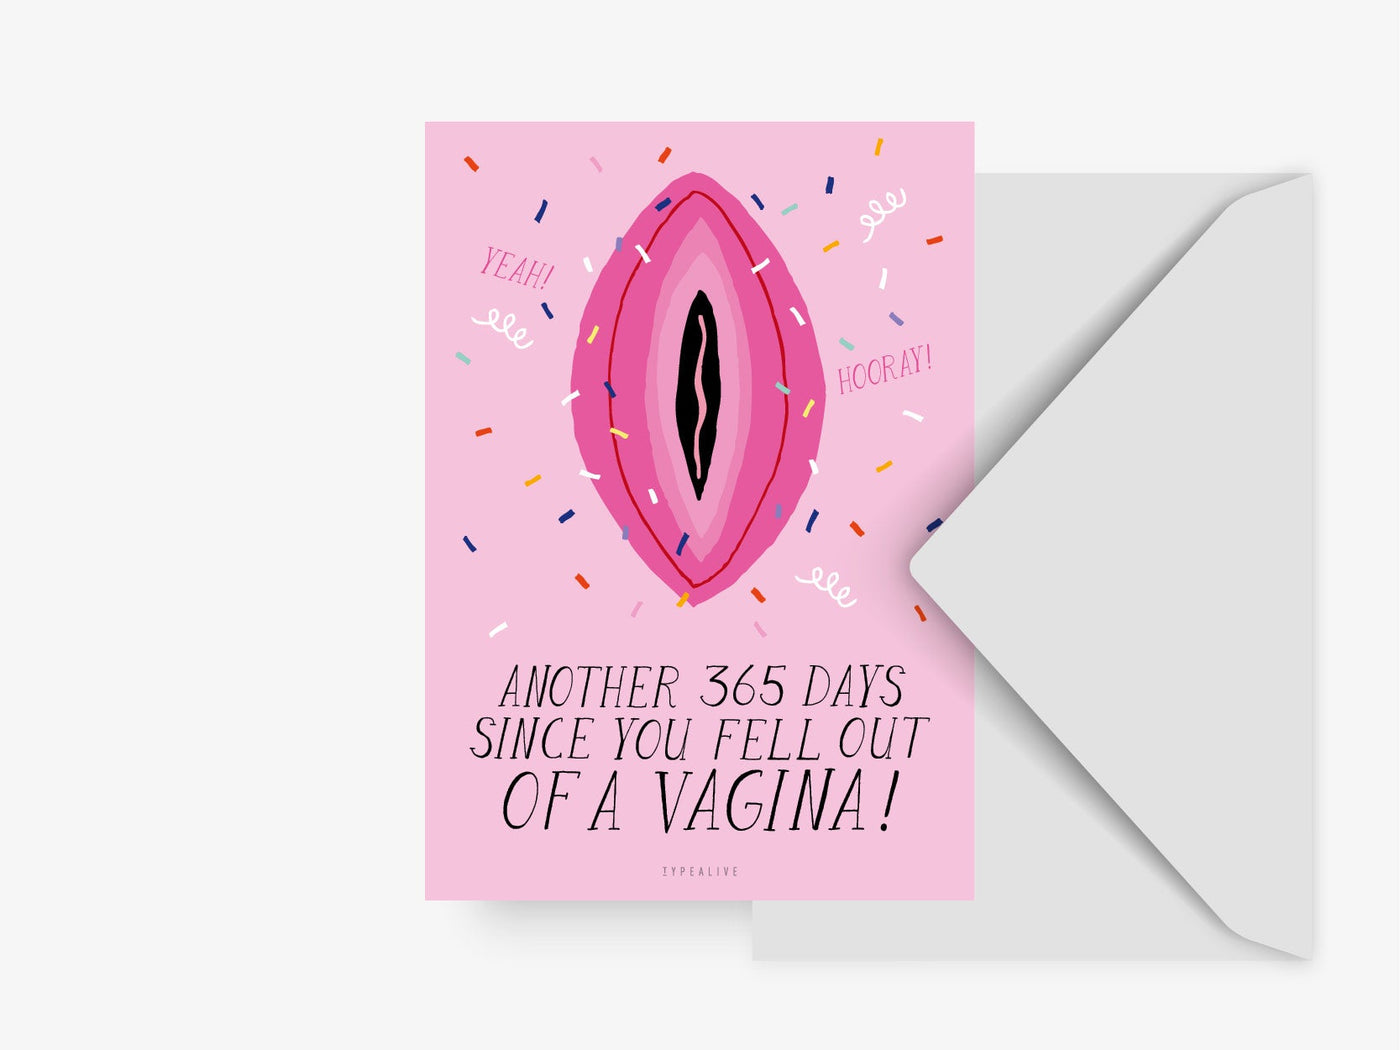 Postkarte / Vagina